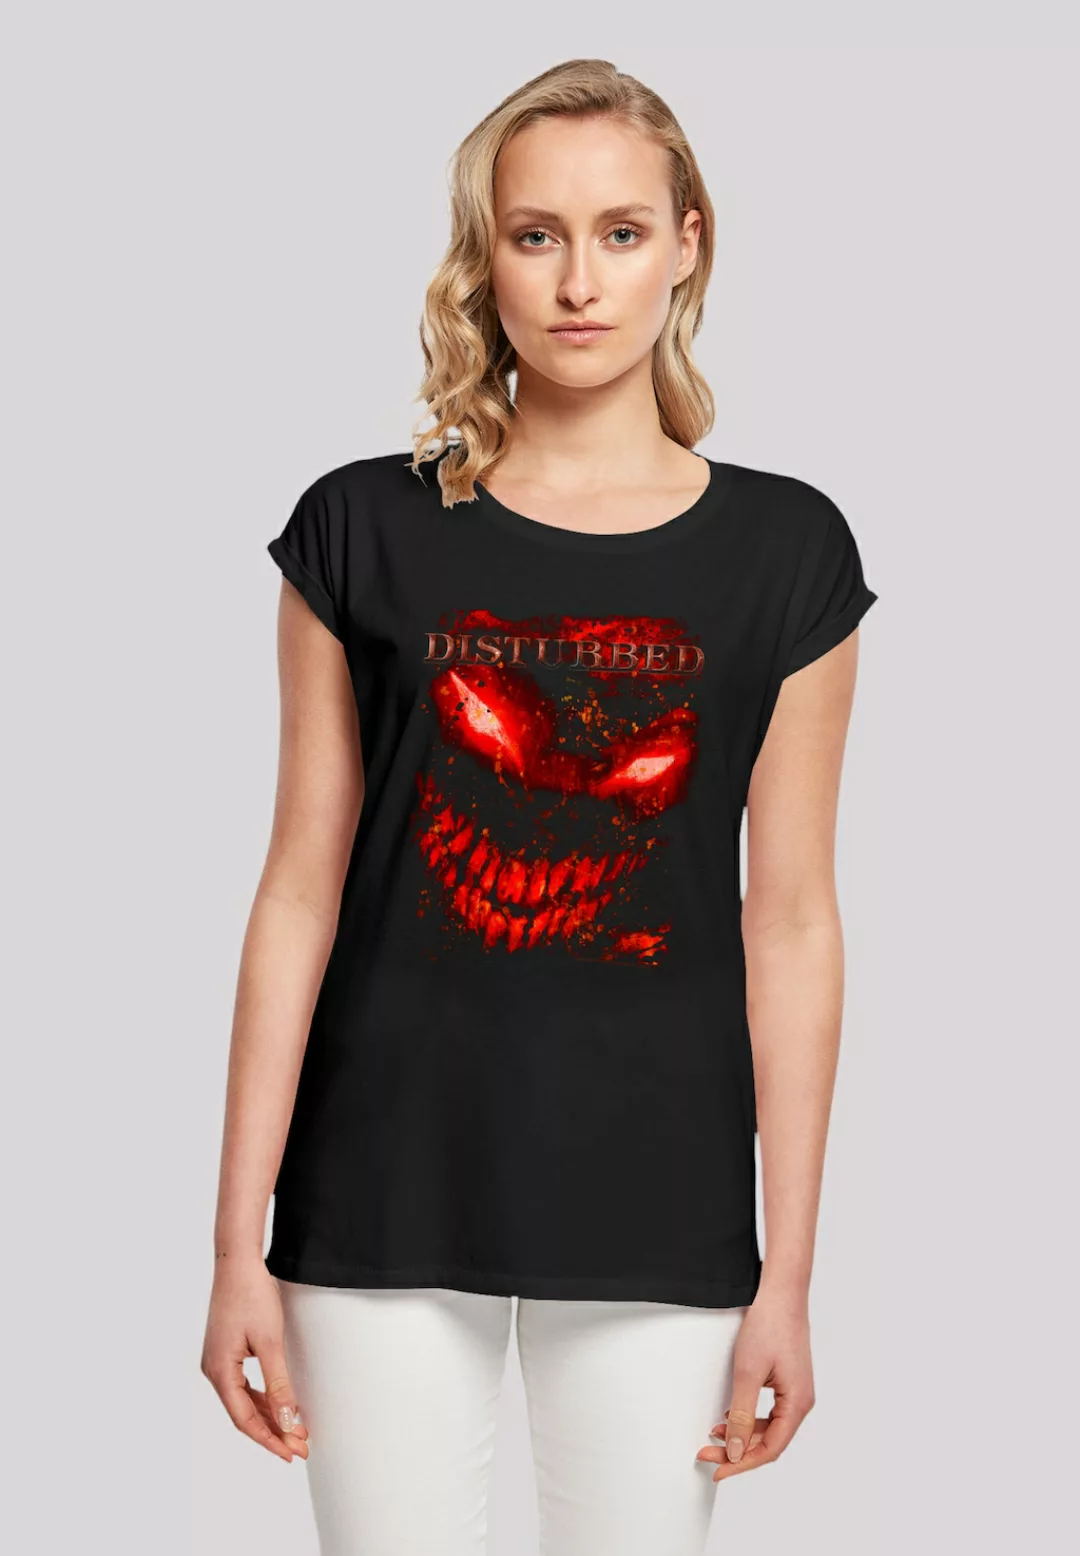 F4NT4STIC T-Shirt "Disturbed Heavy Metal Splat Face", Premium Qualität, Roc günstig online kaufen